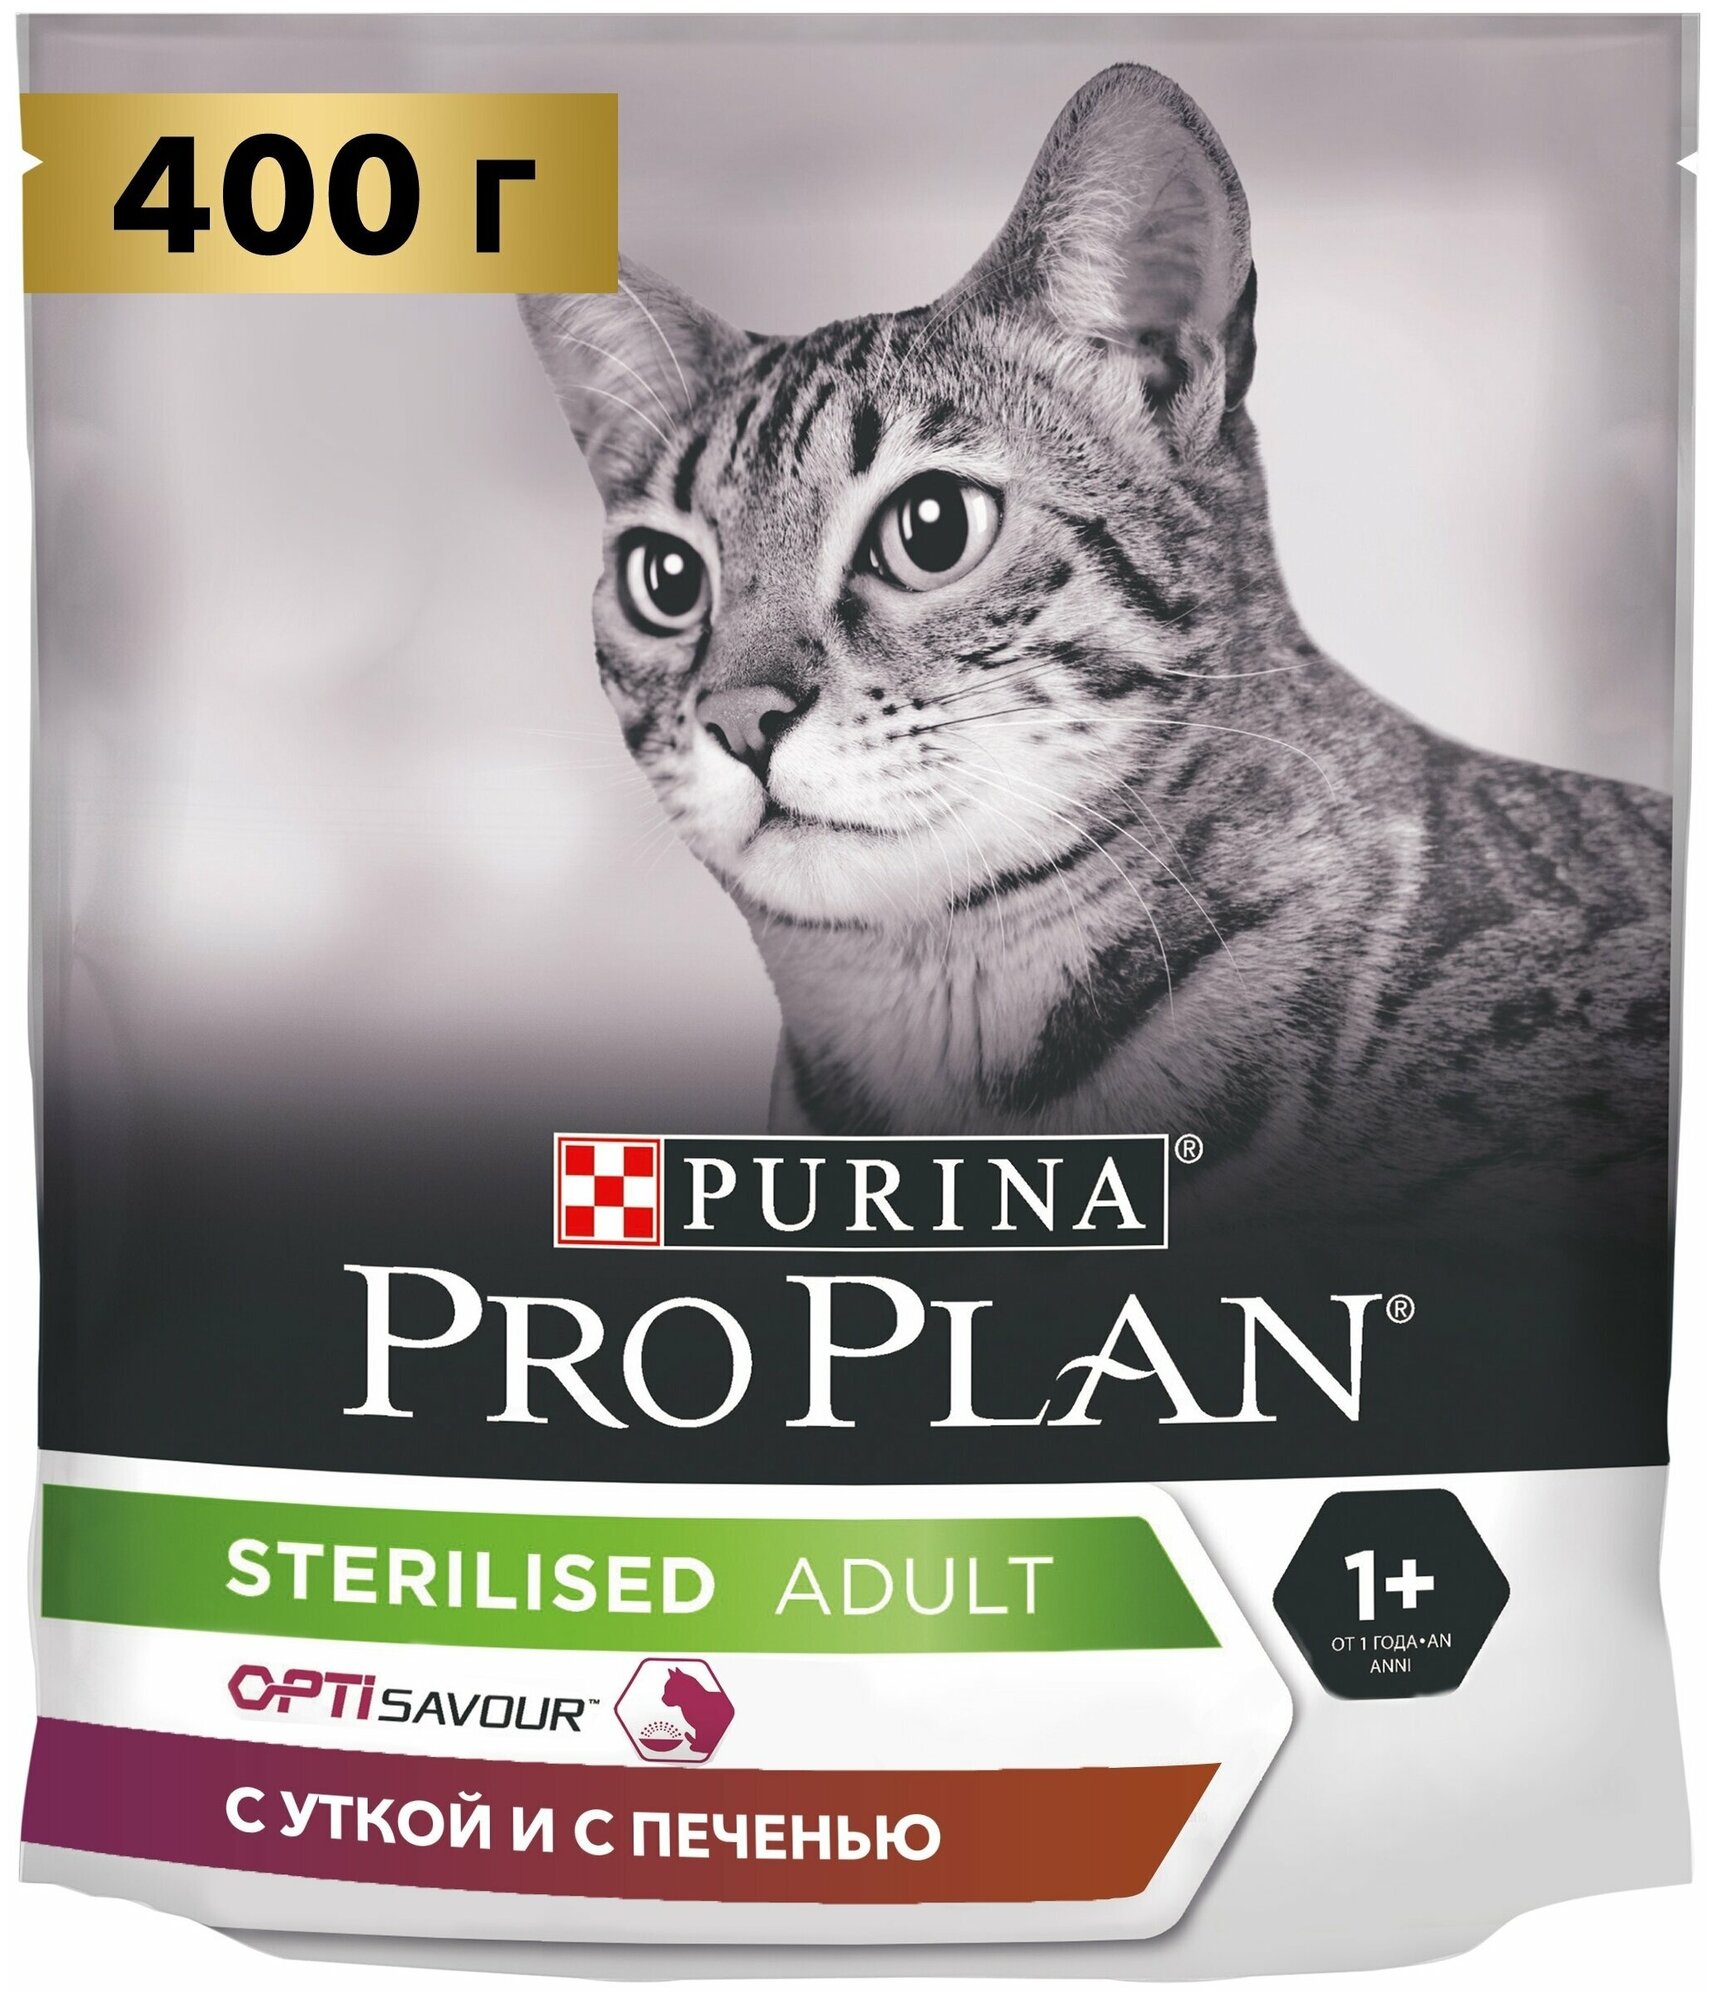 Сухой корм Pro Plan для взрослых стерилизованных кошек и кастрированных котов, с высоким содержанием утки и c печенью 400 г х 8 шт